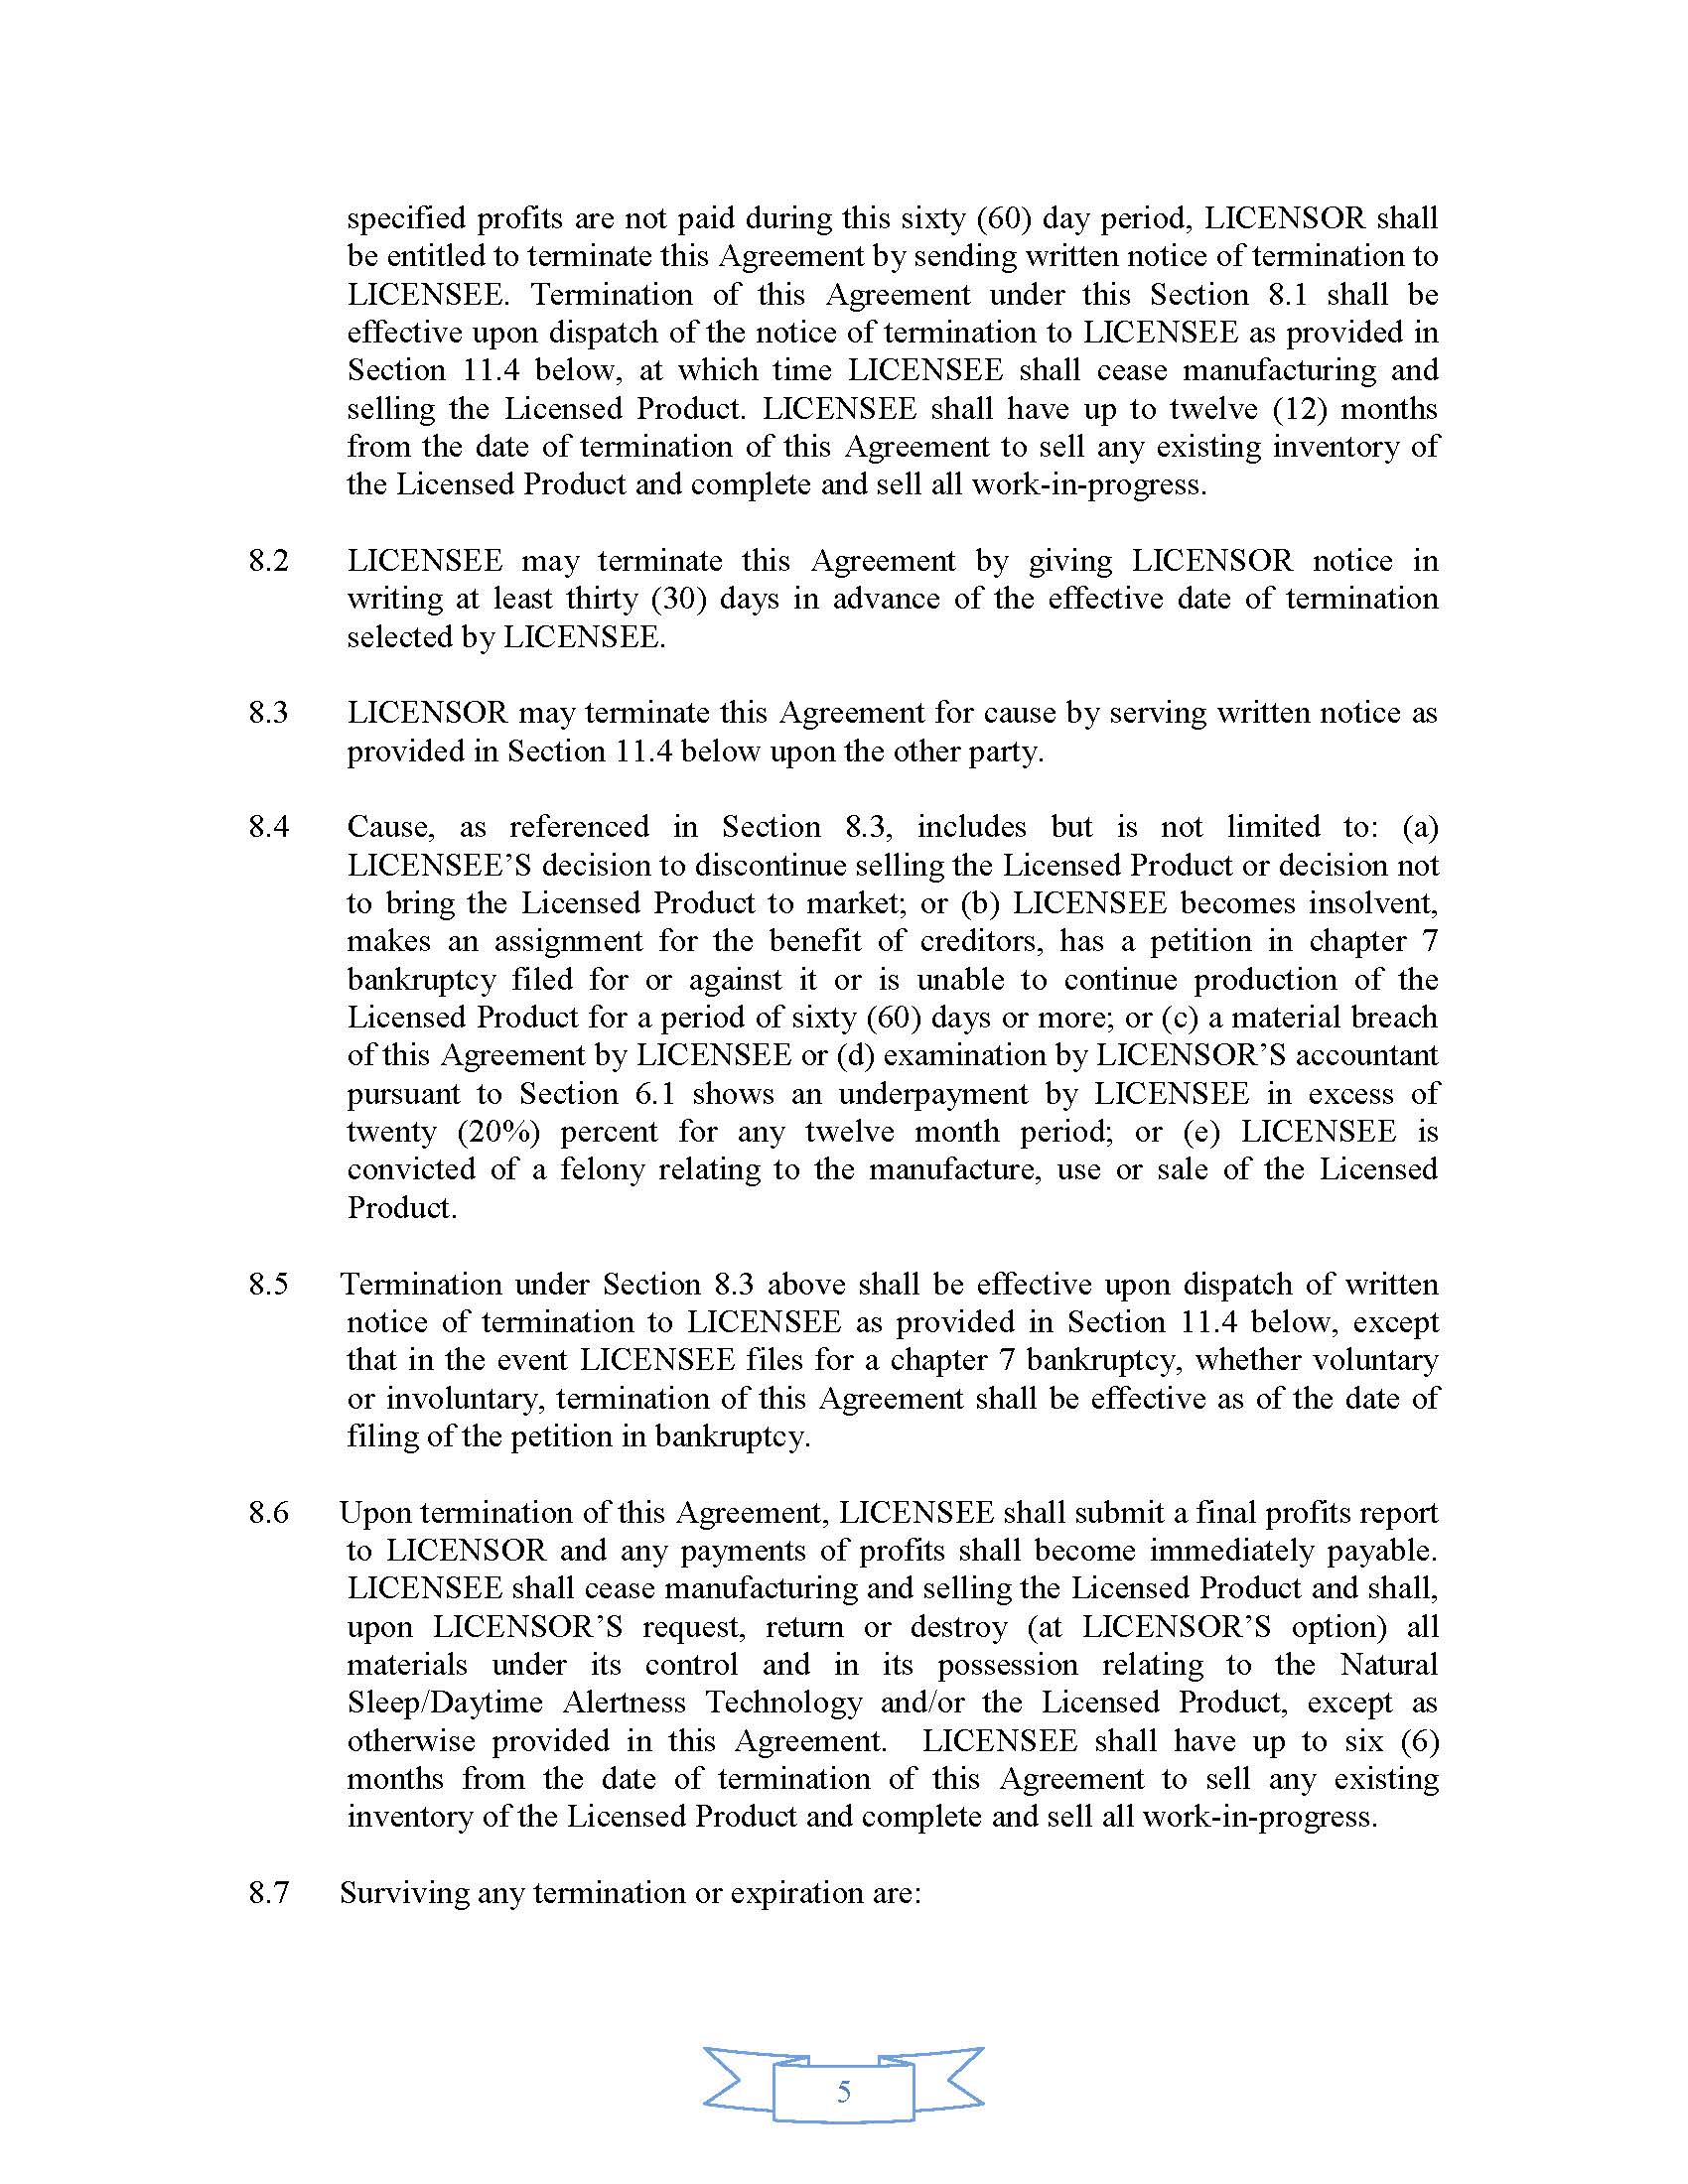 NSI - Summers NutraPharmx License Agreement v5 0-FINAL-111717 KEN_Page_5.jpg